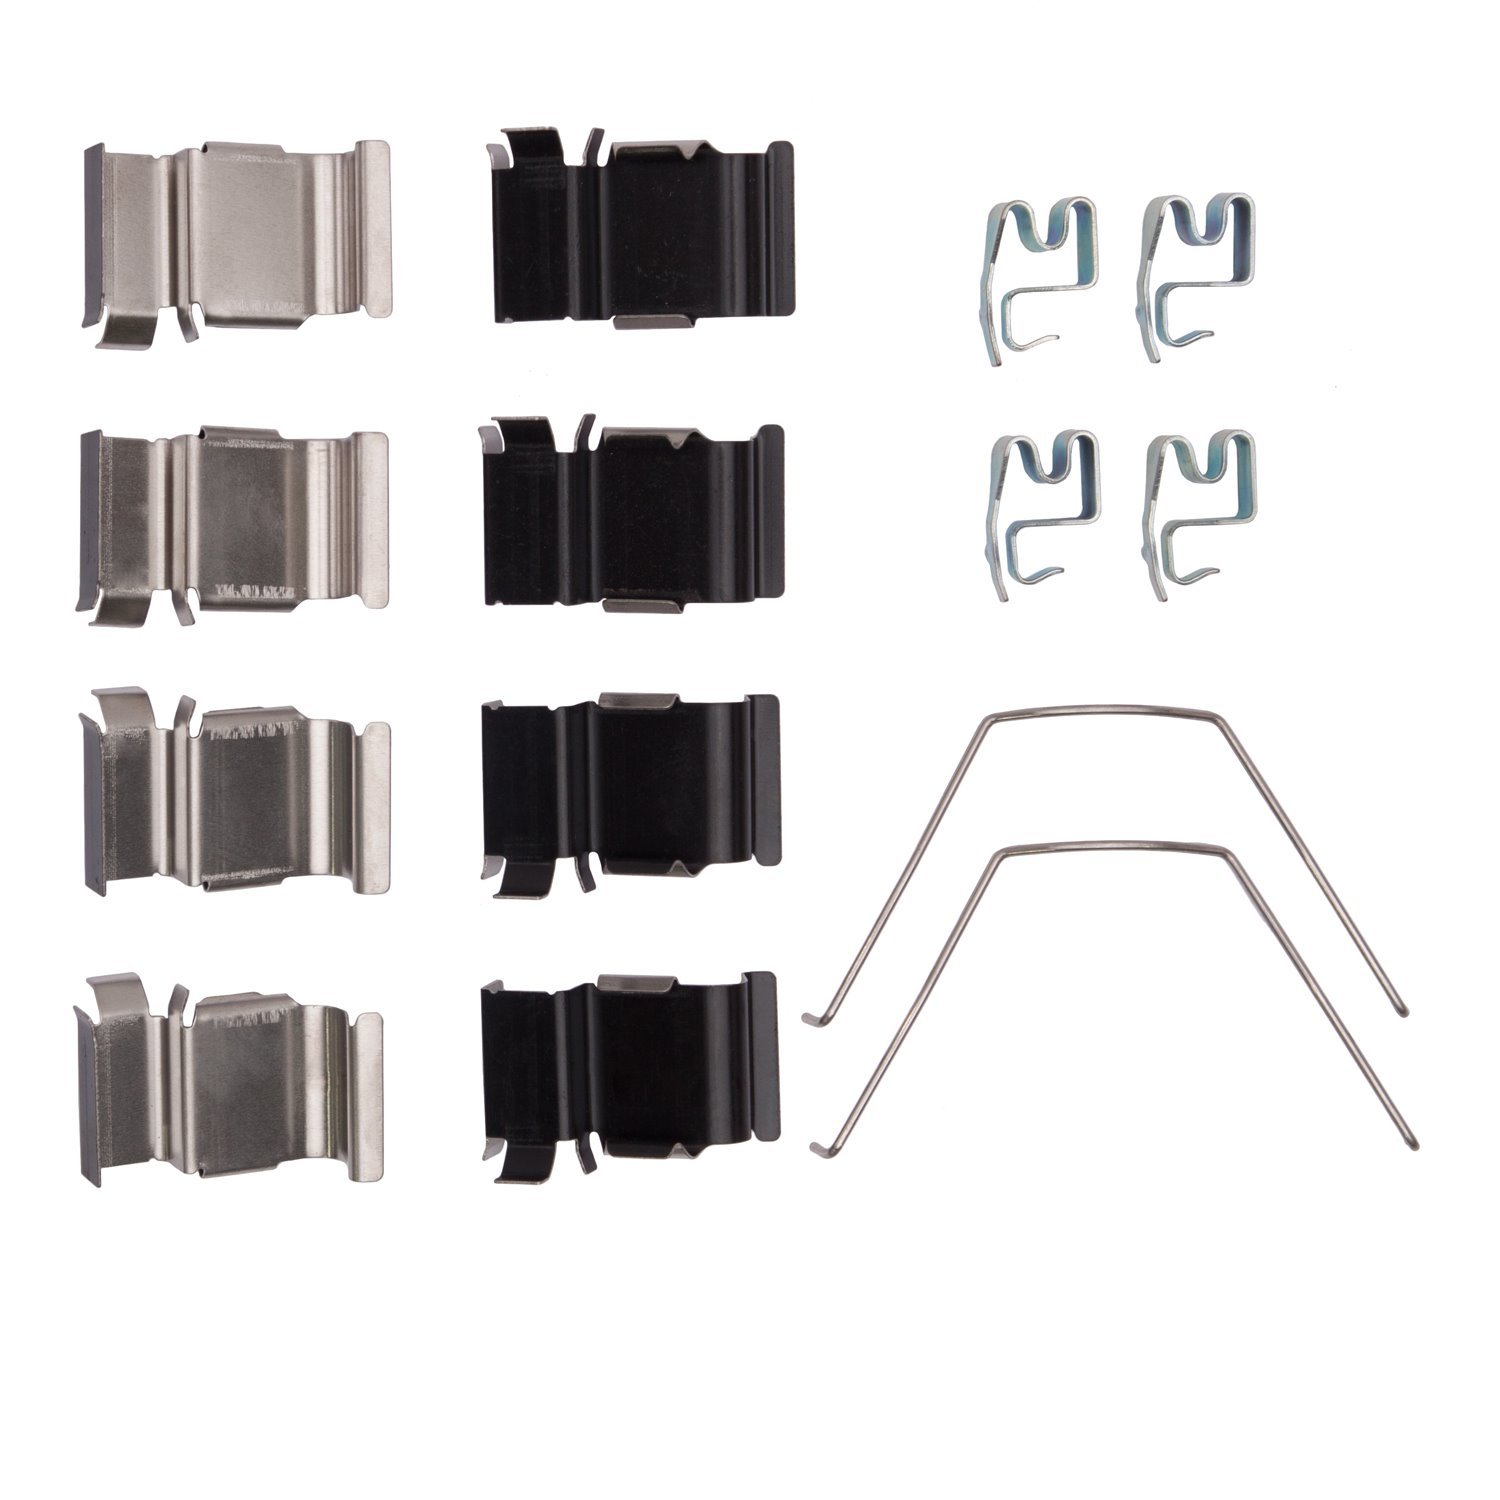 Disc Brake Hardware Kit, Fits Select Multiple Makes/Models, Position: Rear & Front